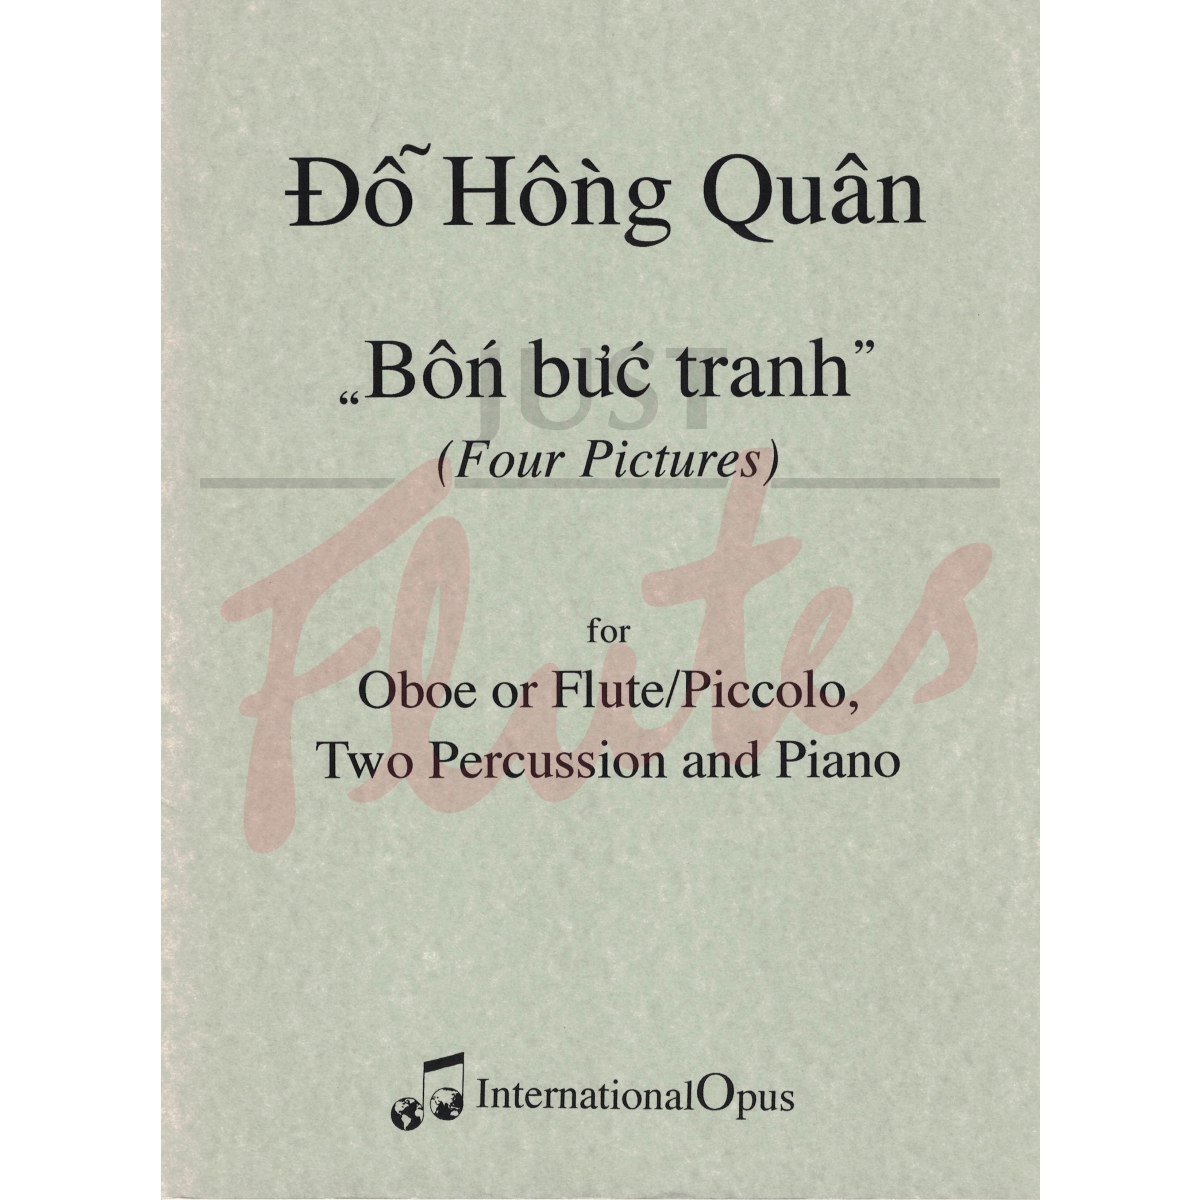 Bon buc tranh (4 Pictures) for Flute or Piccolo/Oboe, Percussion and Piano